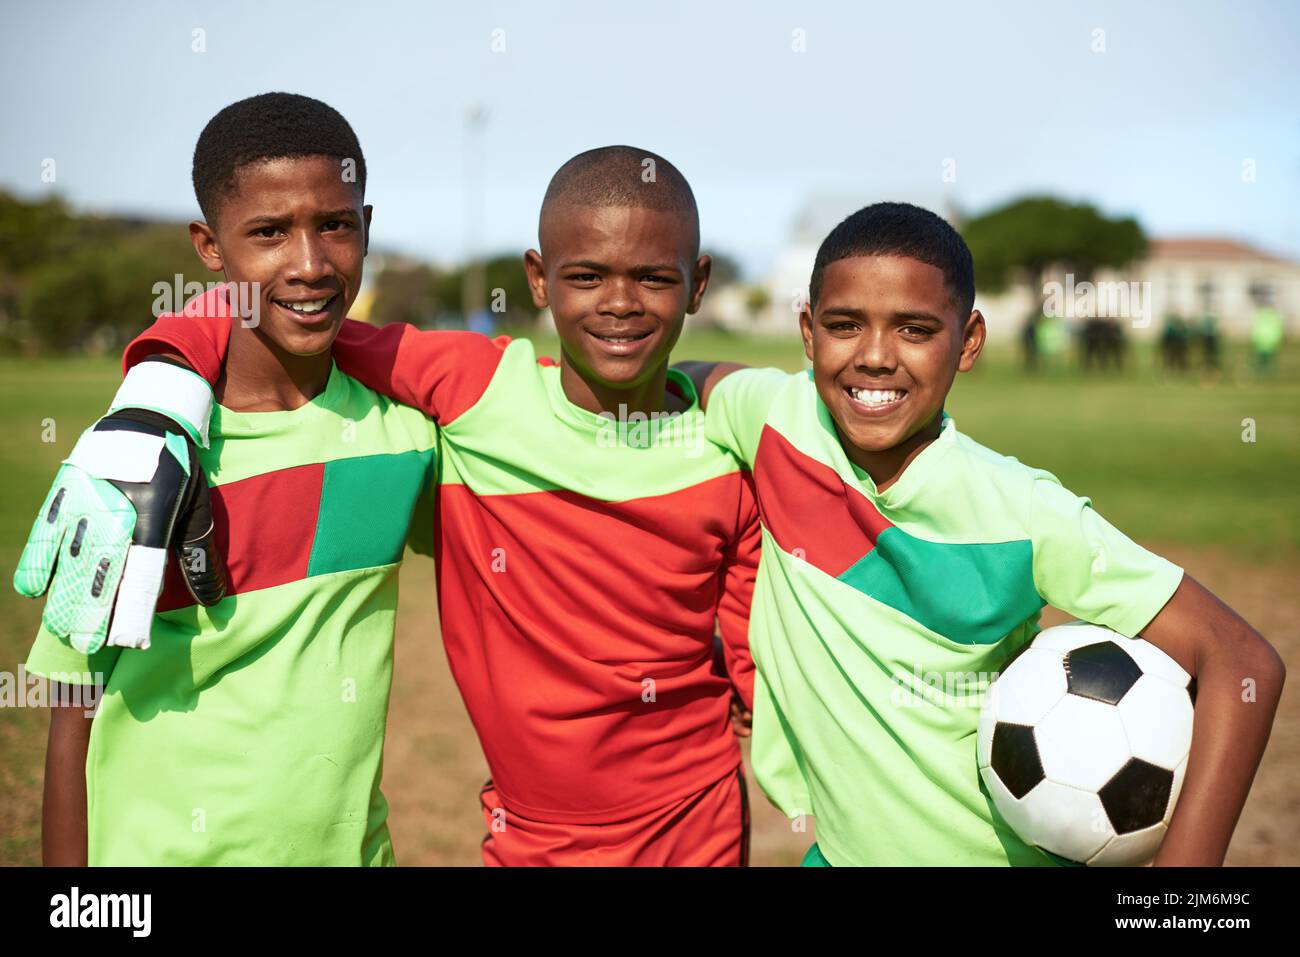 Gib uns einfach einen Ball und sei glücklich. Porträt einer Gruppe junger Jungen, die auf einem Sportplatz Fußball spielen. Stockfoto